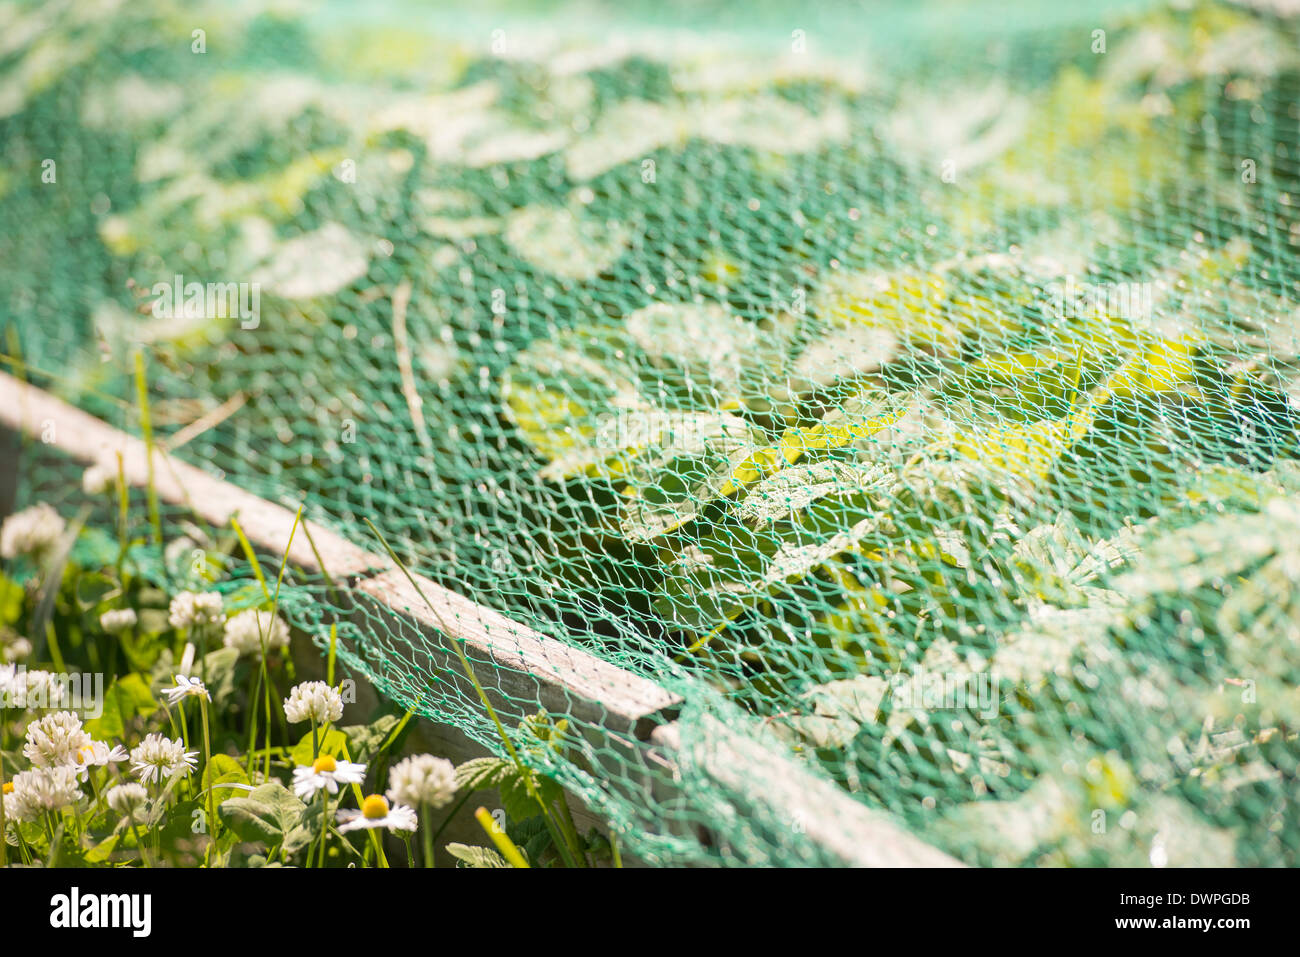 Piante che crescono nel giardino nel letto di vegetali protette da rete in plastica Foto Stock